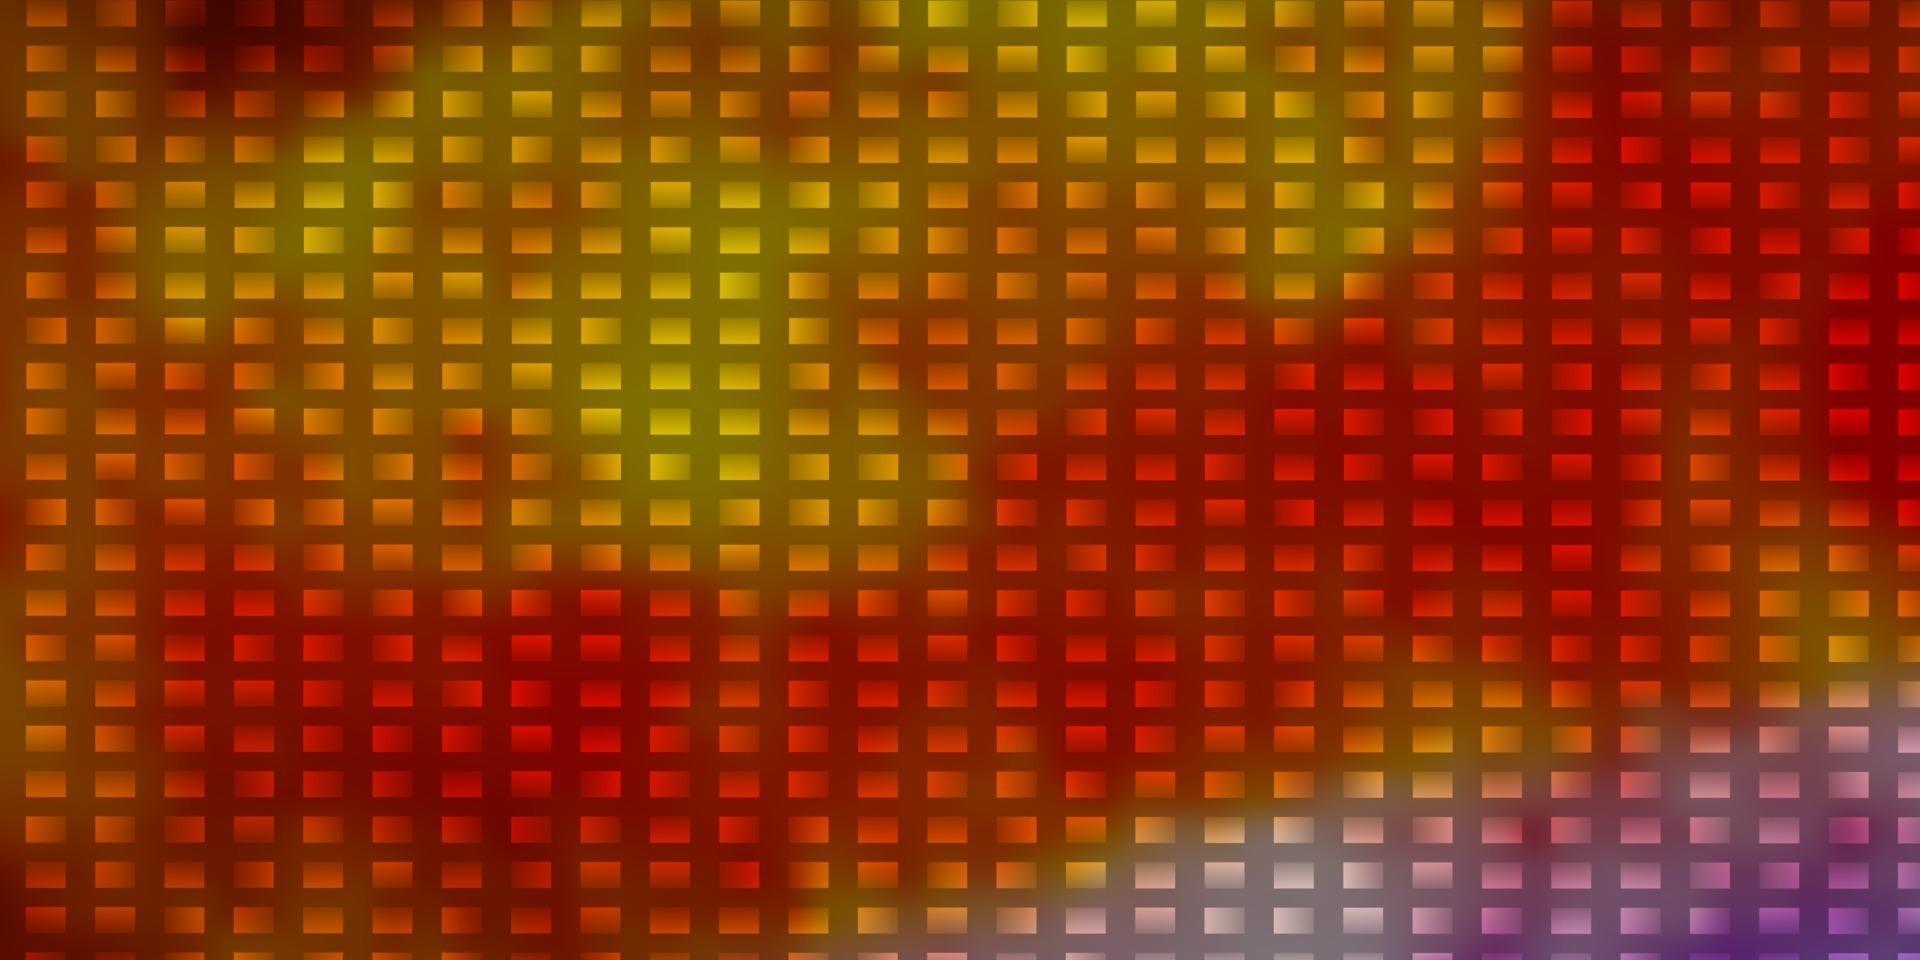 luz de fundo vector multicolor em estilo poligonal.